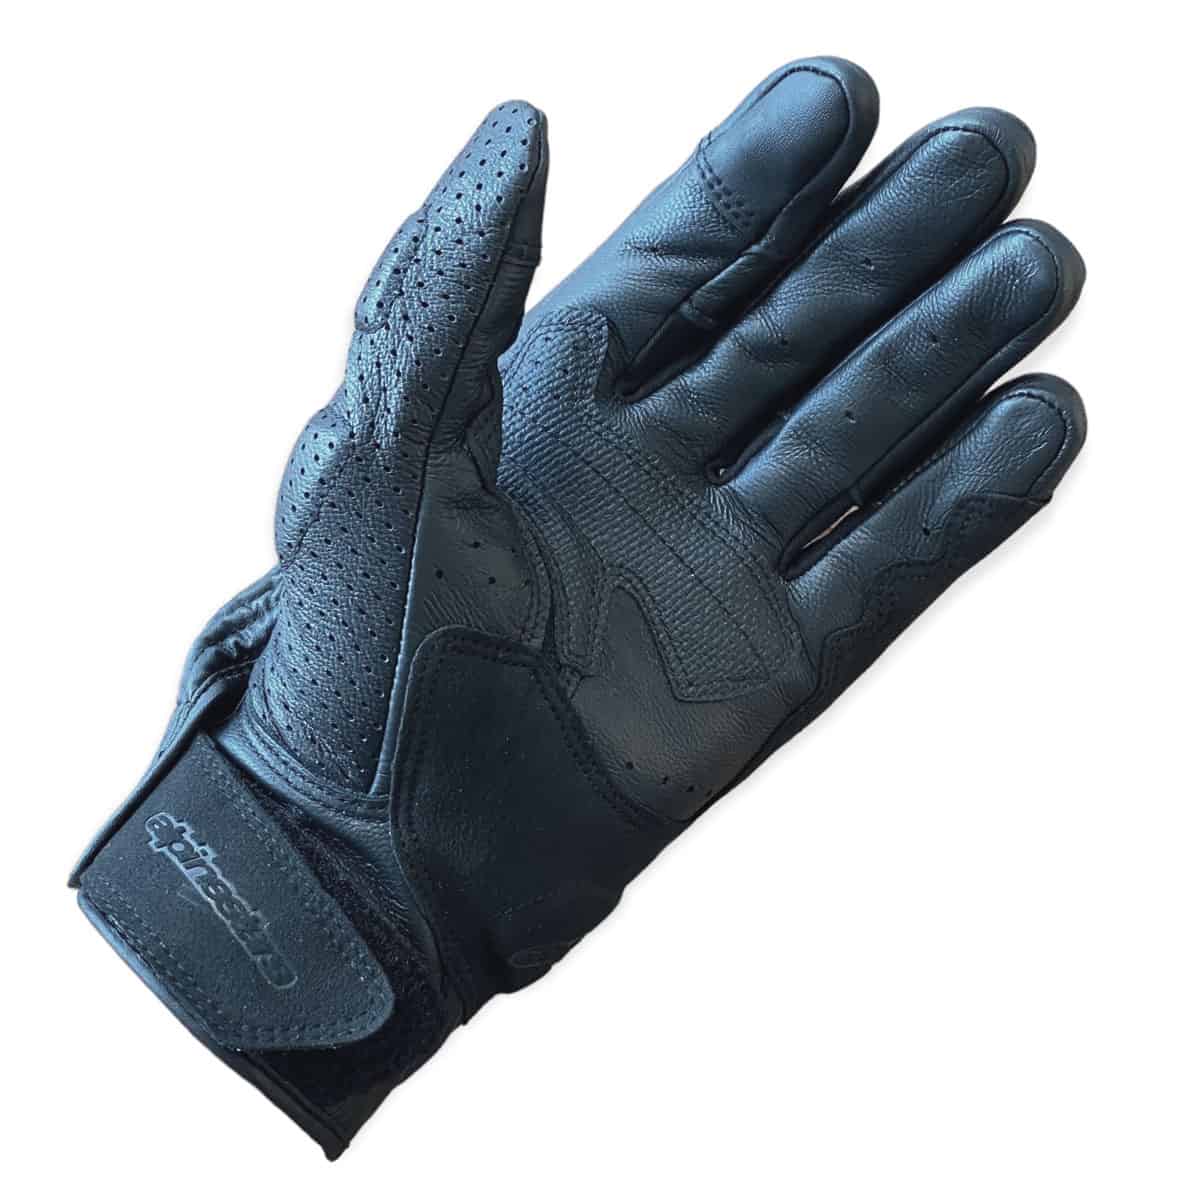 Alpinestars Mustang V2 Gloves: Summer motorcycle gloves - Palm